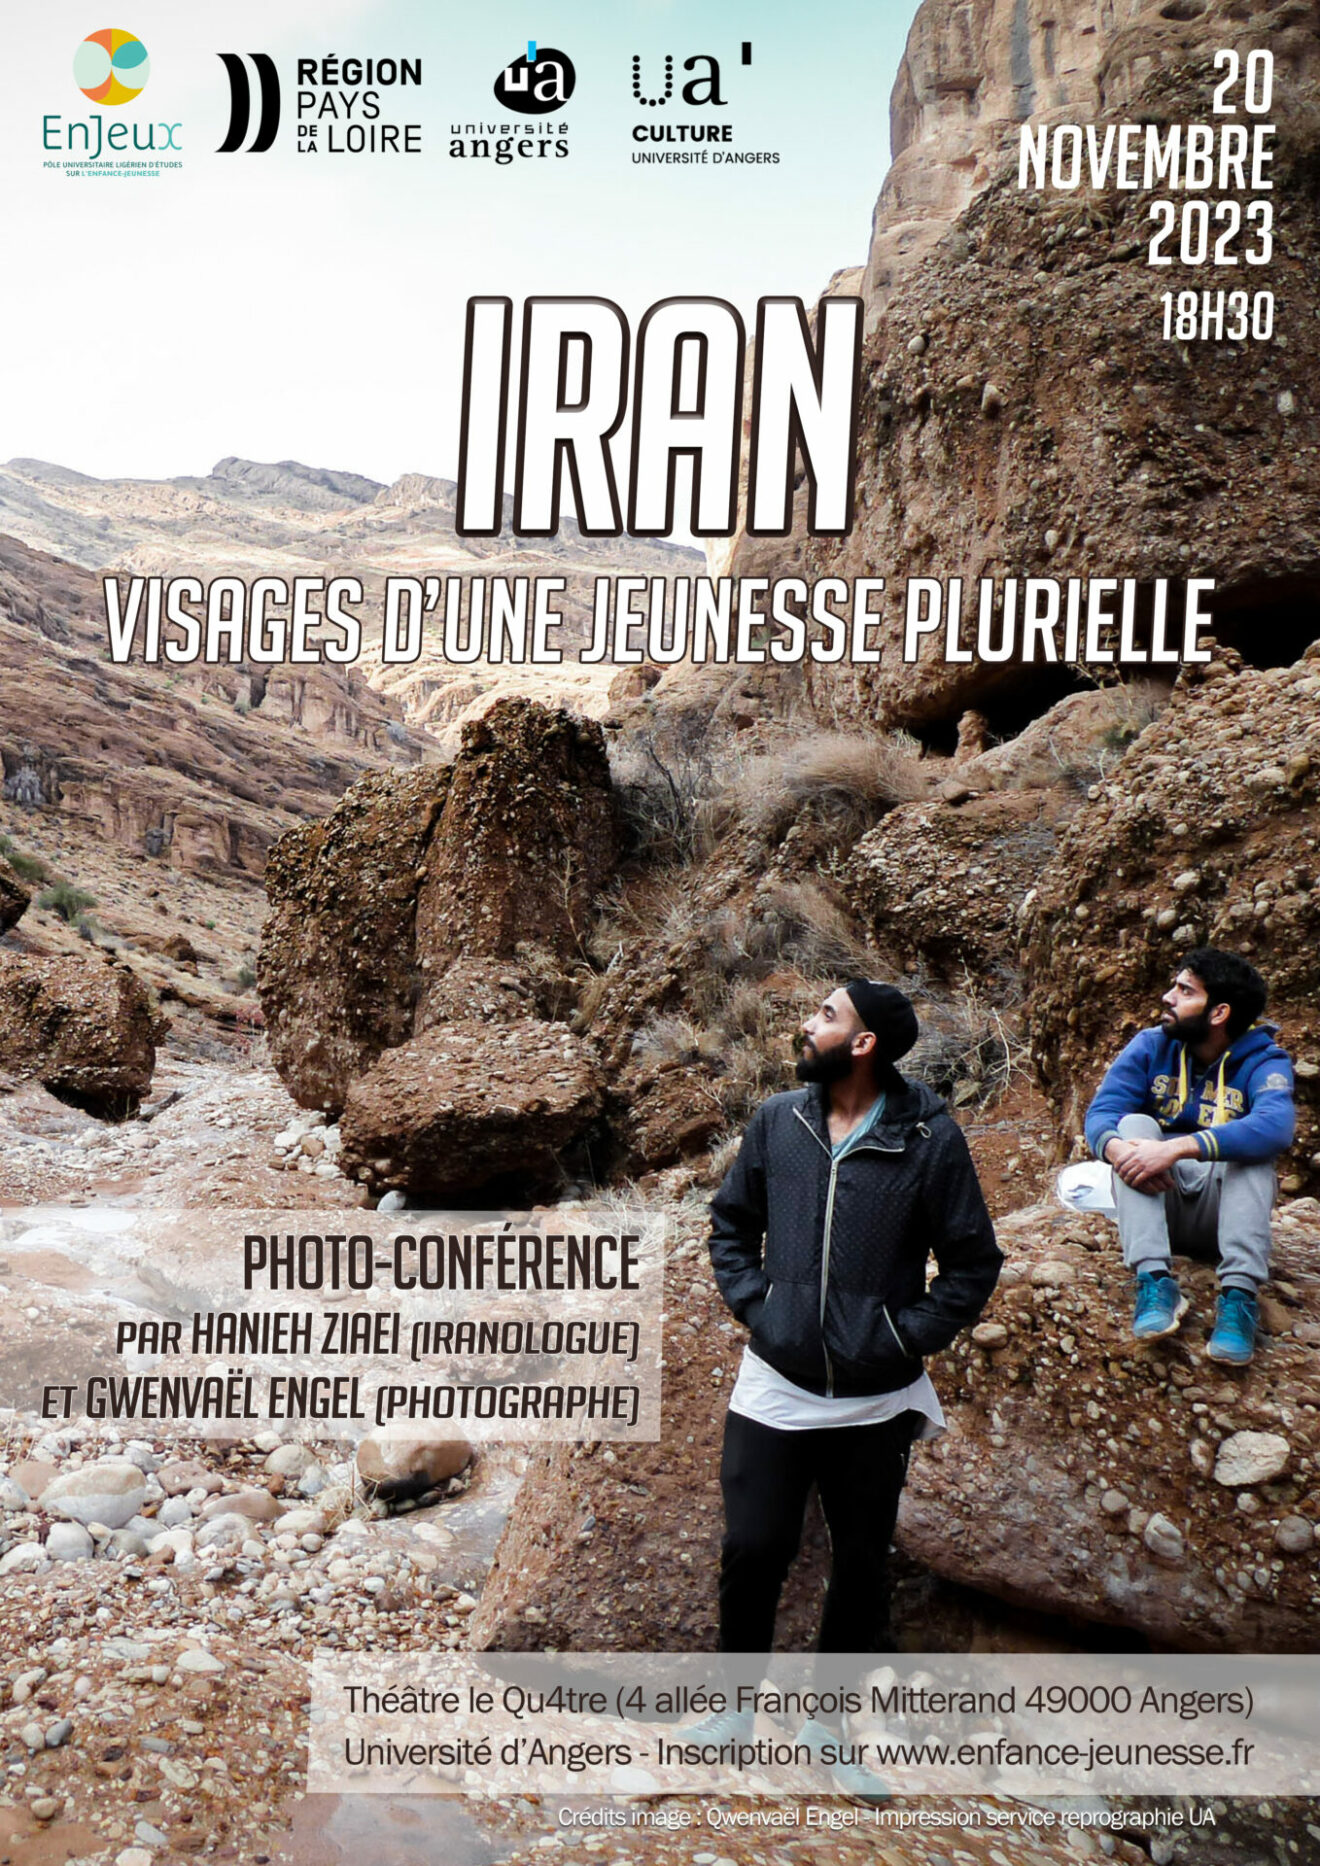 [Photo-conférence] IRAN Visages d'une jeunesse plurielle